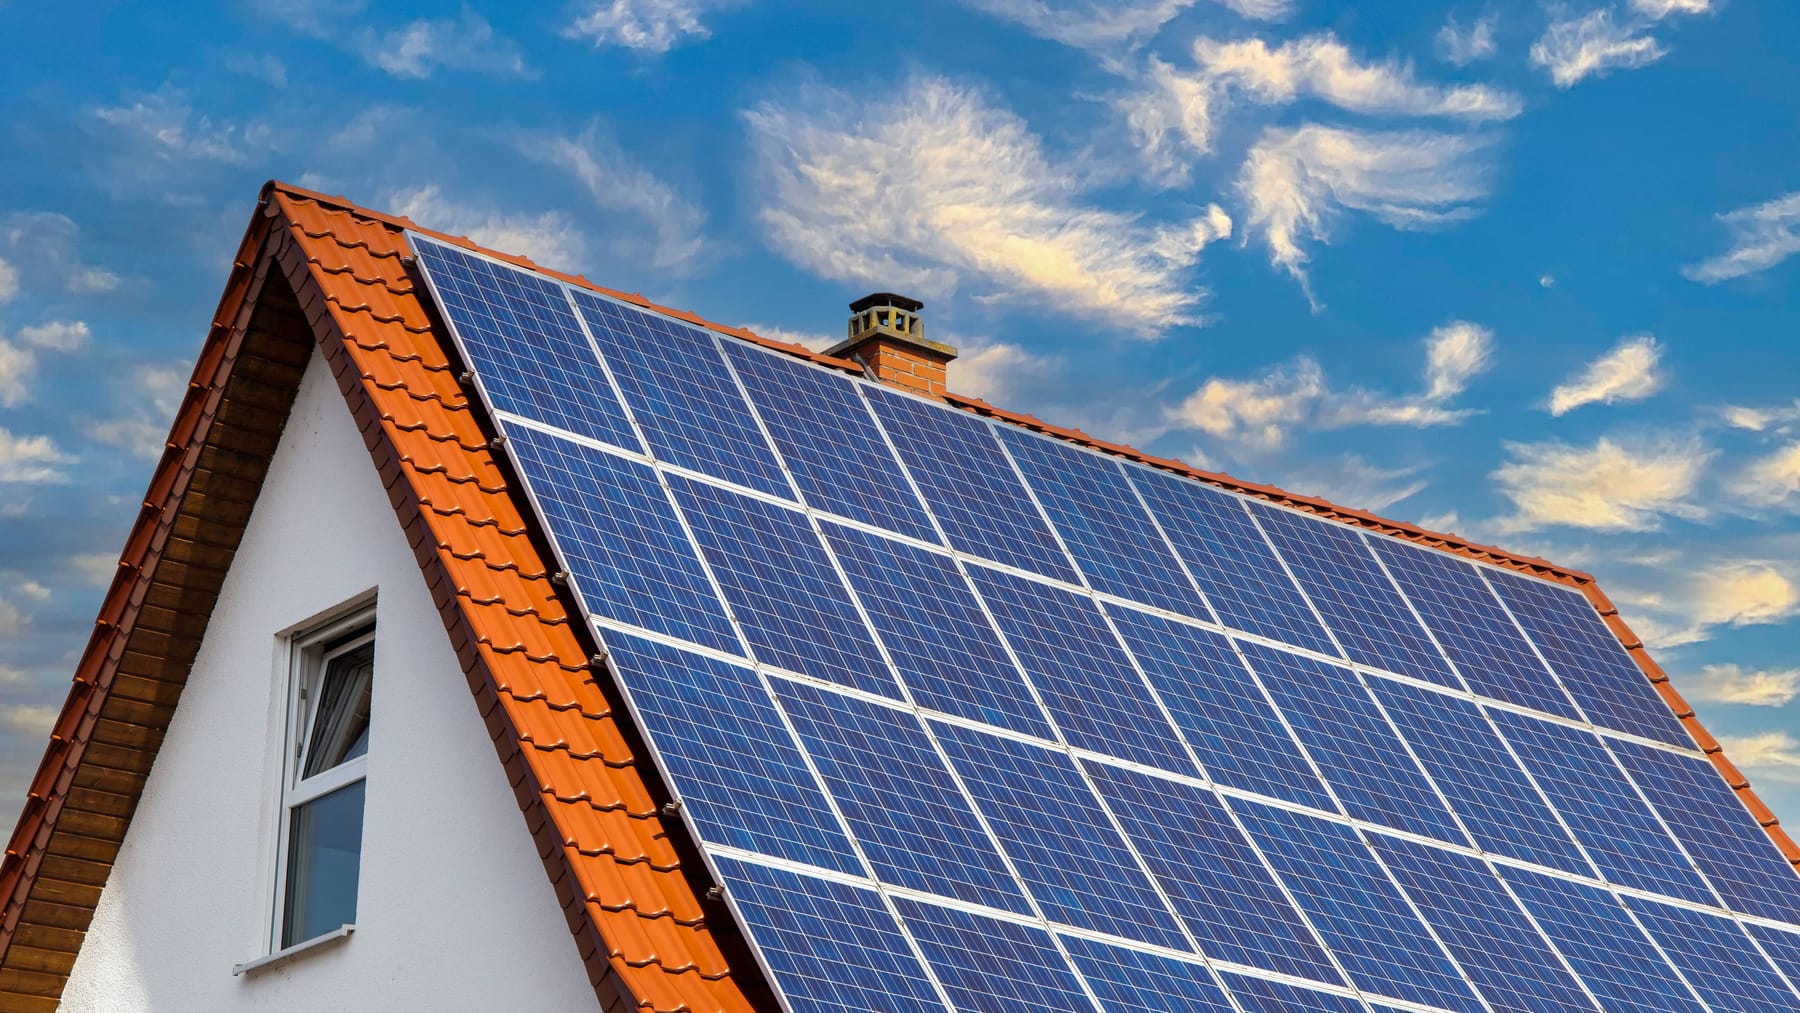 Solarthermie: Kann Sonnenenergie die Heizkosten senken?